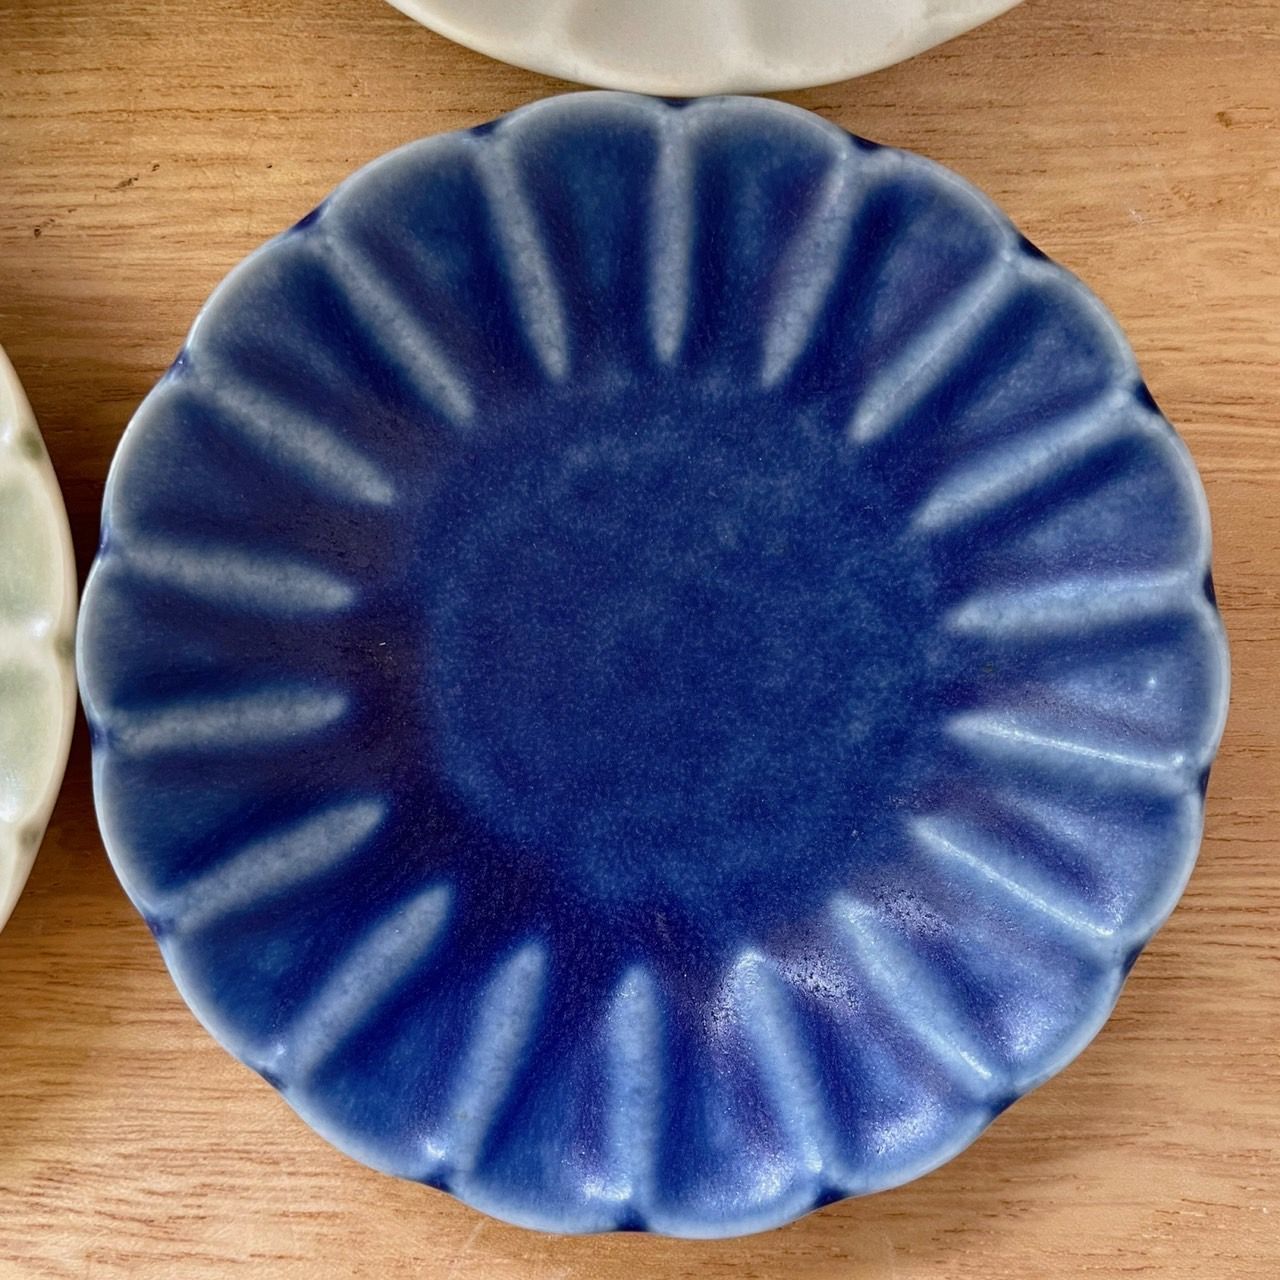 ４枚セット】小皿 ミニプレート 取り皿 日本製 美濃焼 - メルカリ